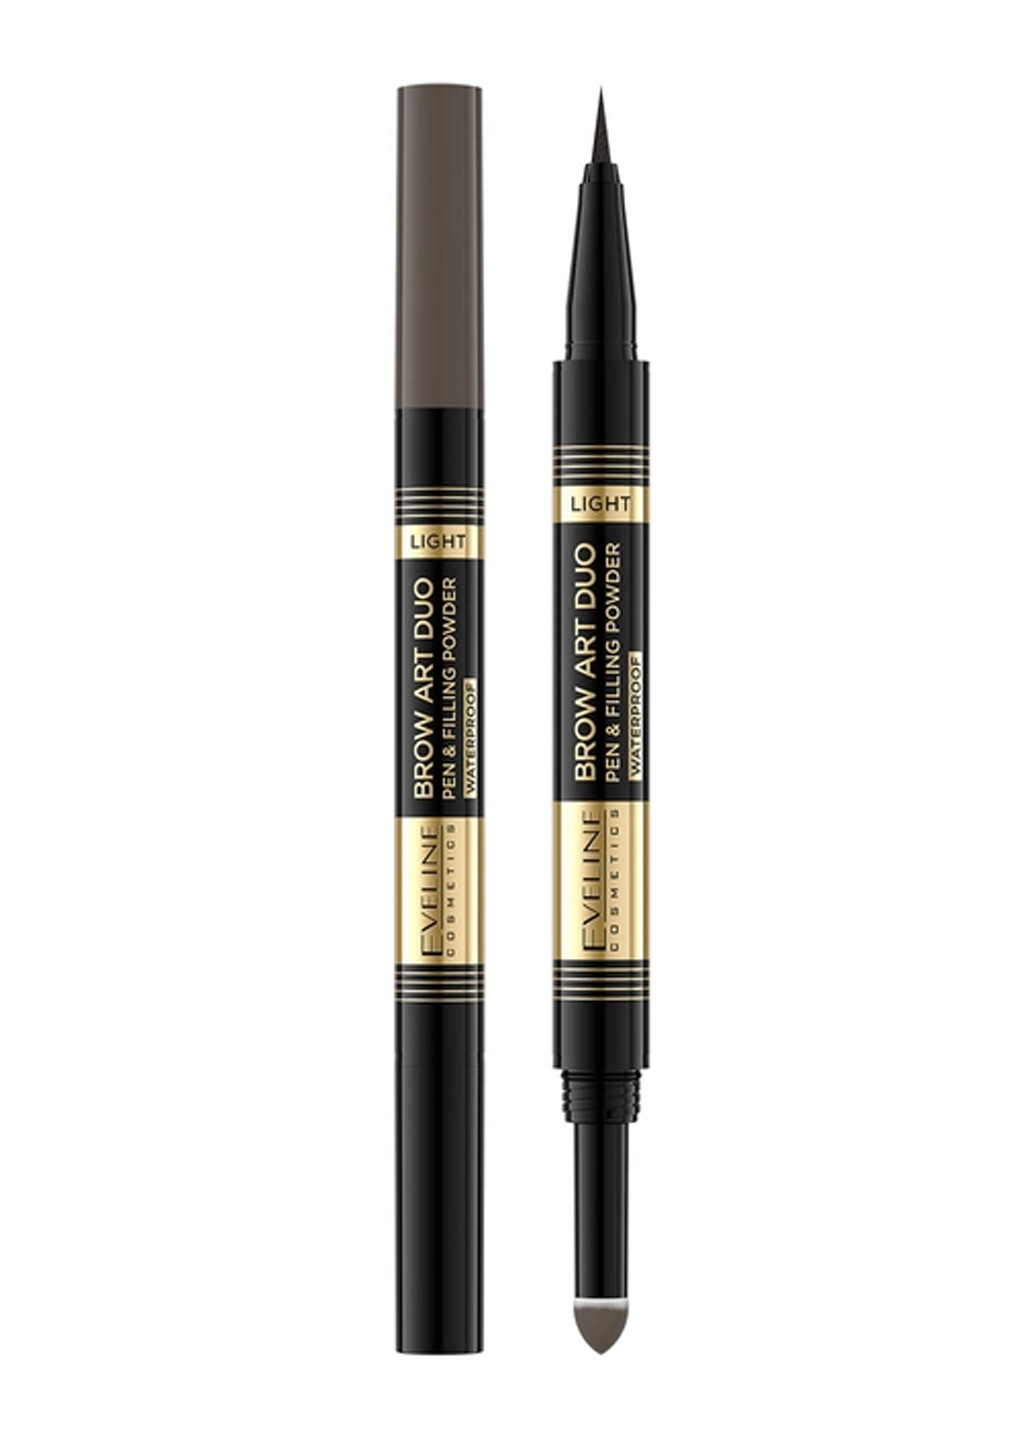 Ультратонкий водостойкий маркер и пудра для бровей Eveline Brow Art Duo 01 Light 9 г Eveline Cosmetics 5903416014362 (260118859)